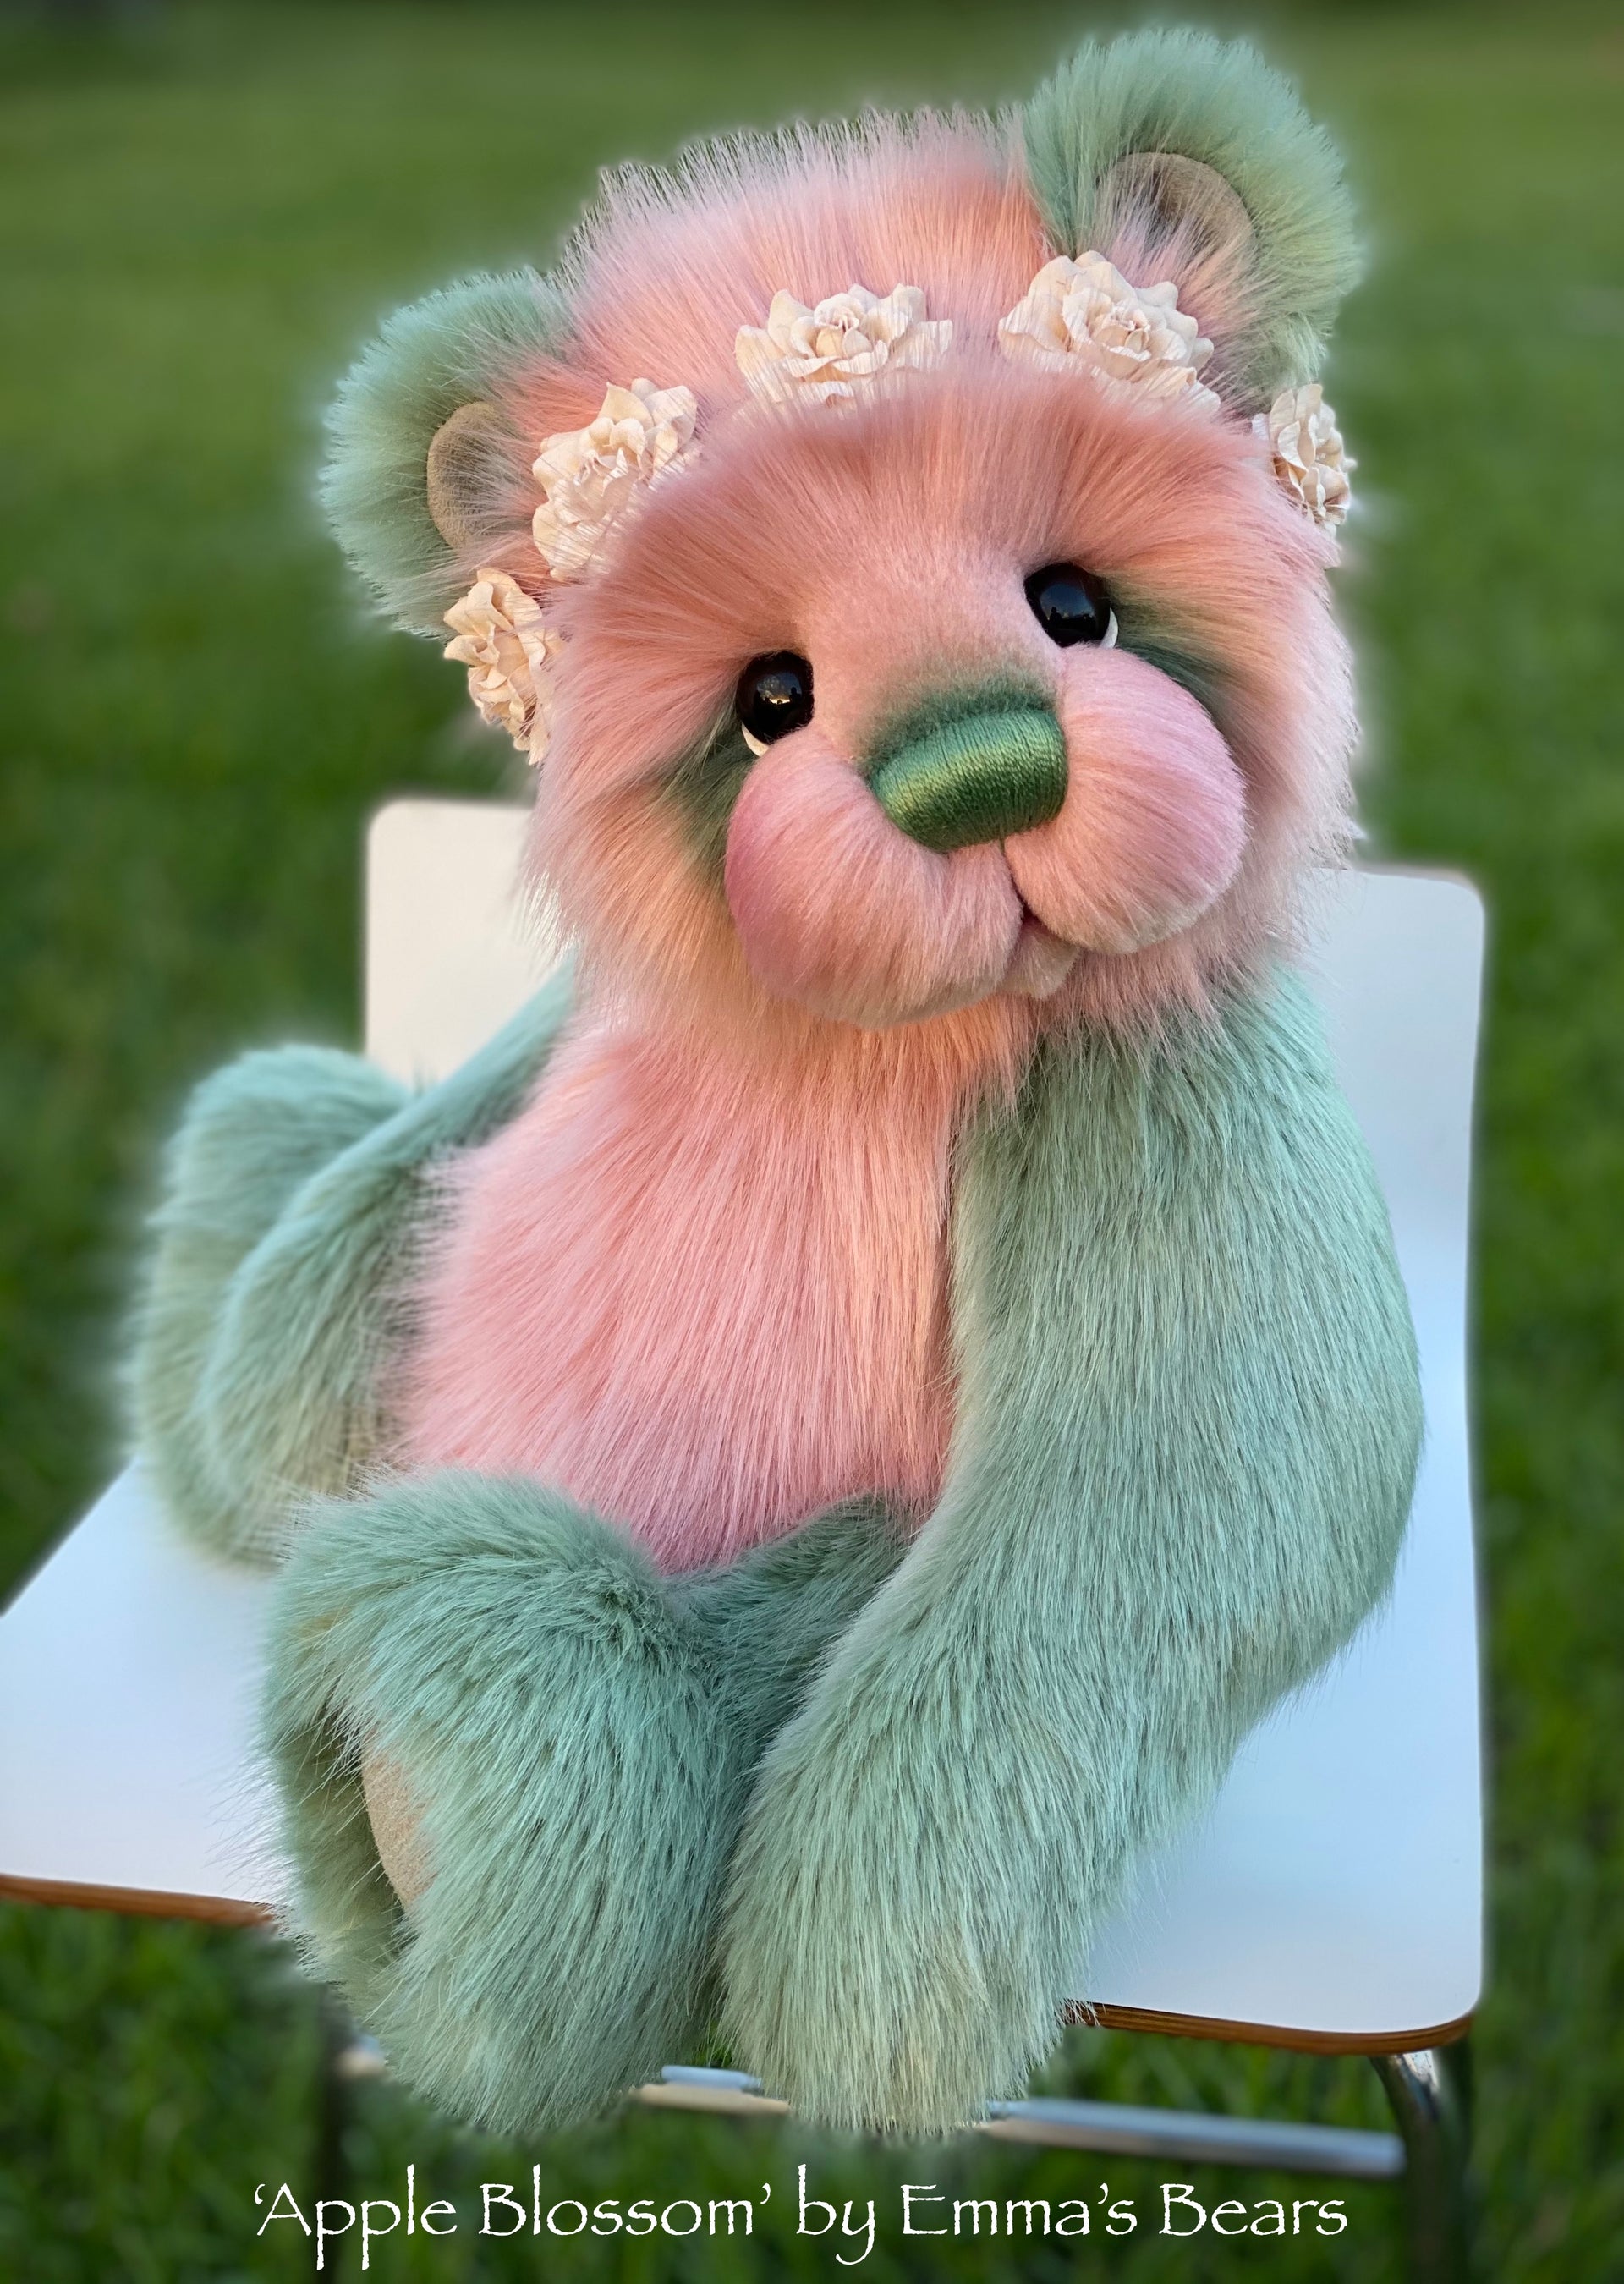 Apple Blossom - 18" faux fur artist bear by Emmas Bears - OOAK